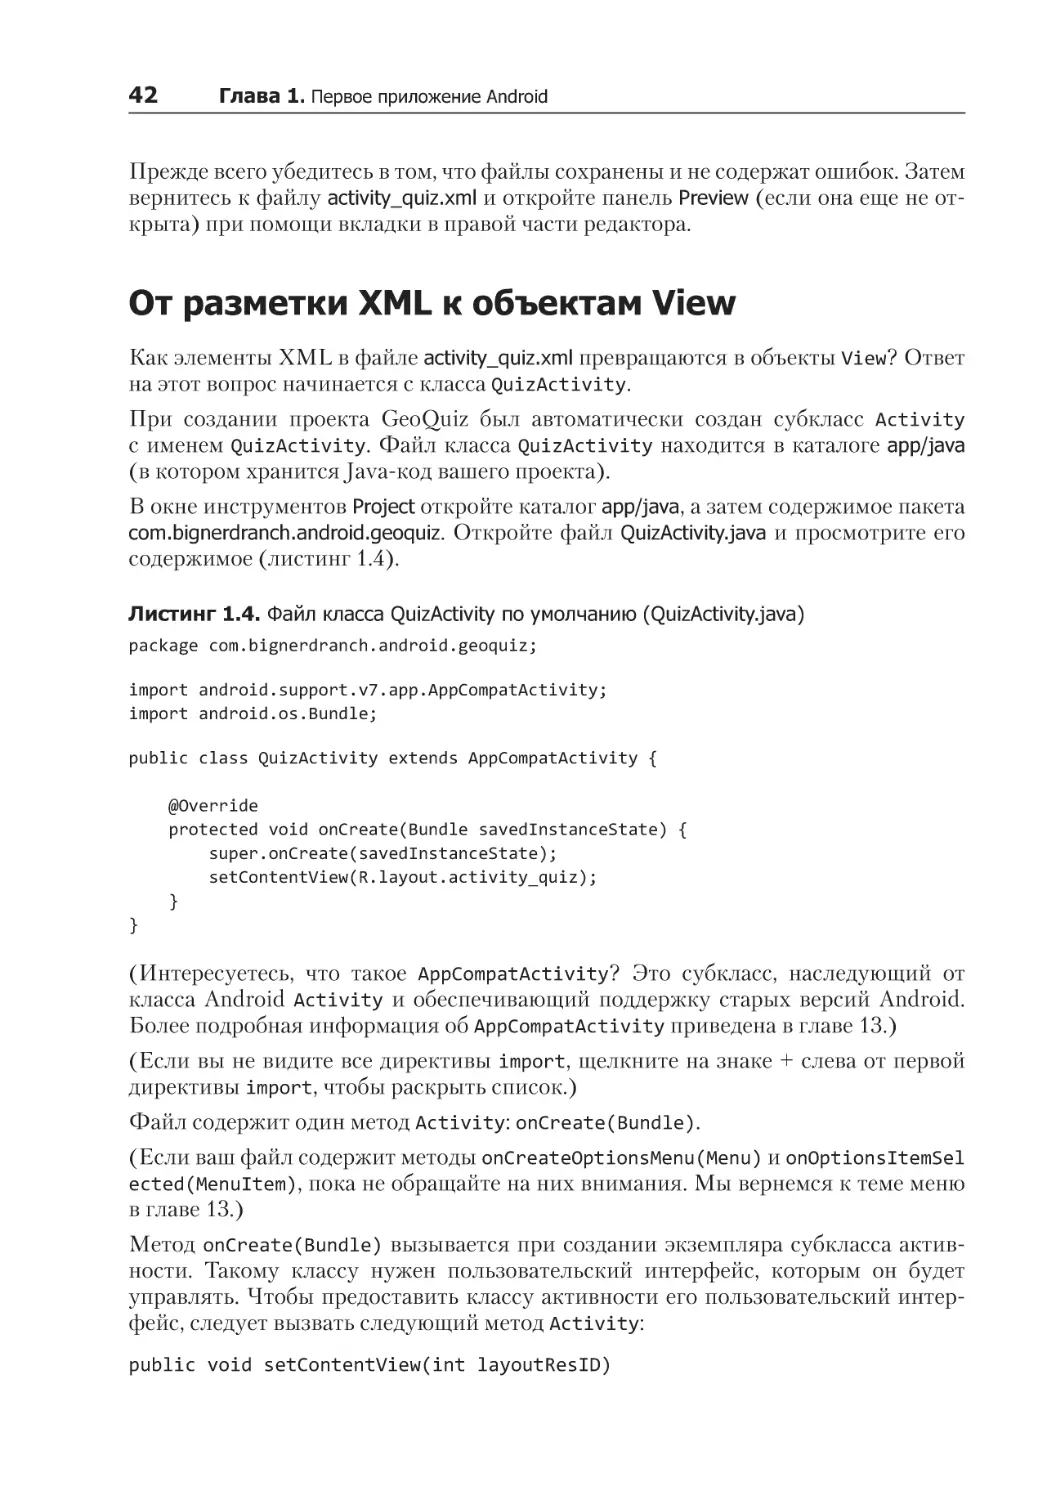 От разметки XML к объектам View